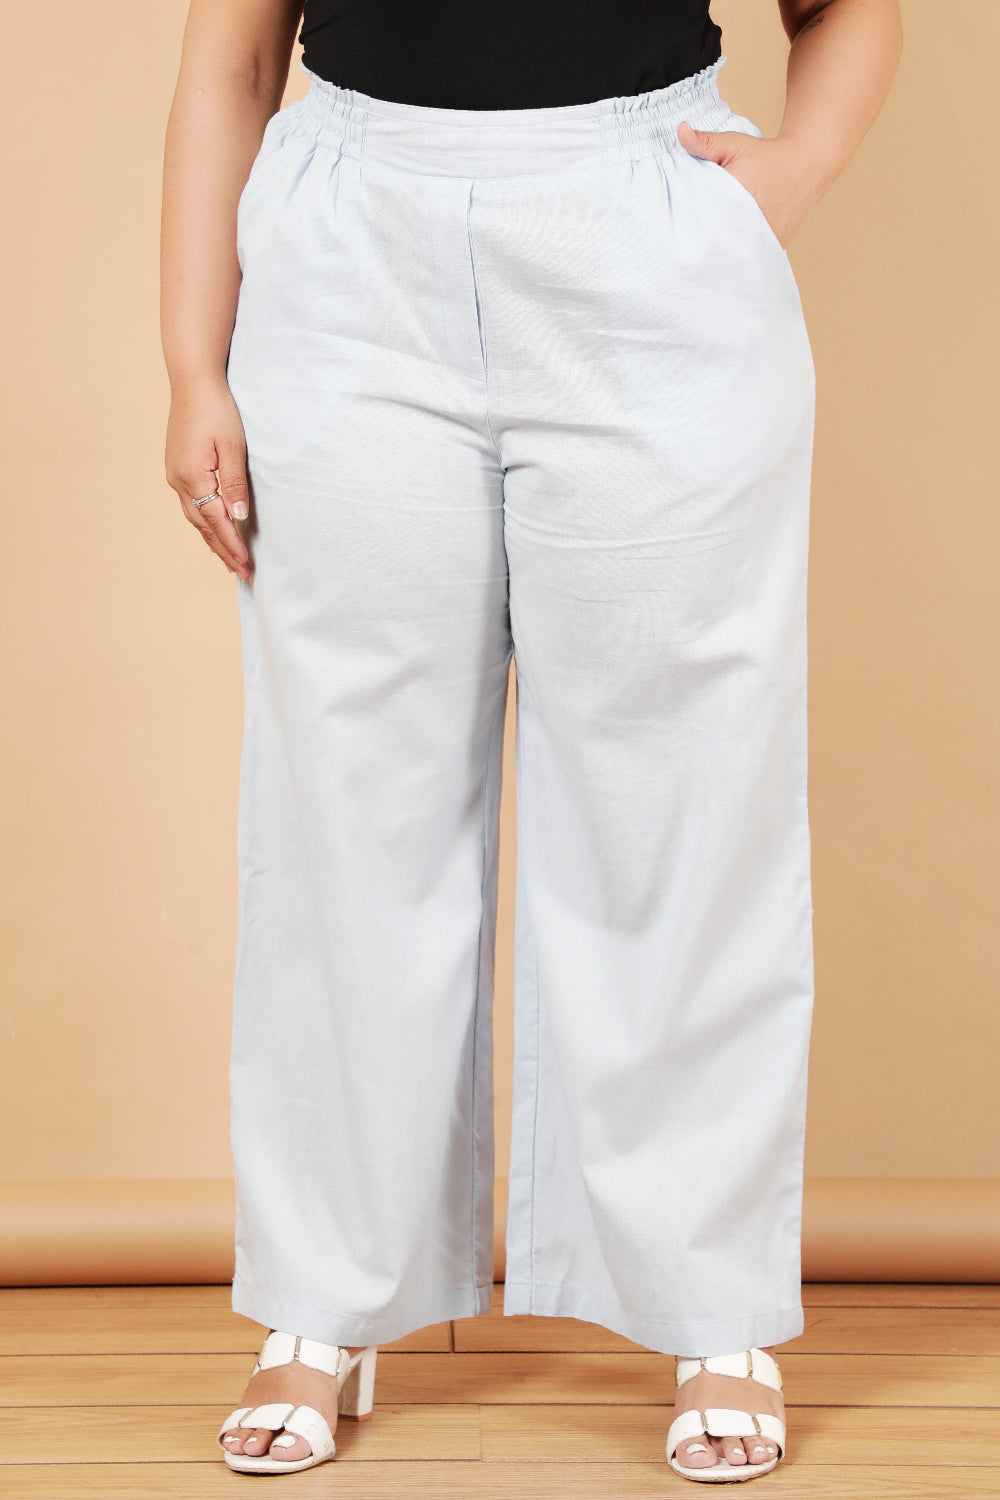 Plus Size Plus Size Sky Blue Cotton Linen Pants Online in India